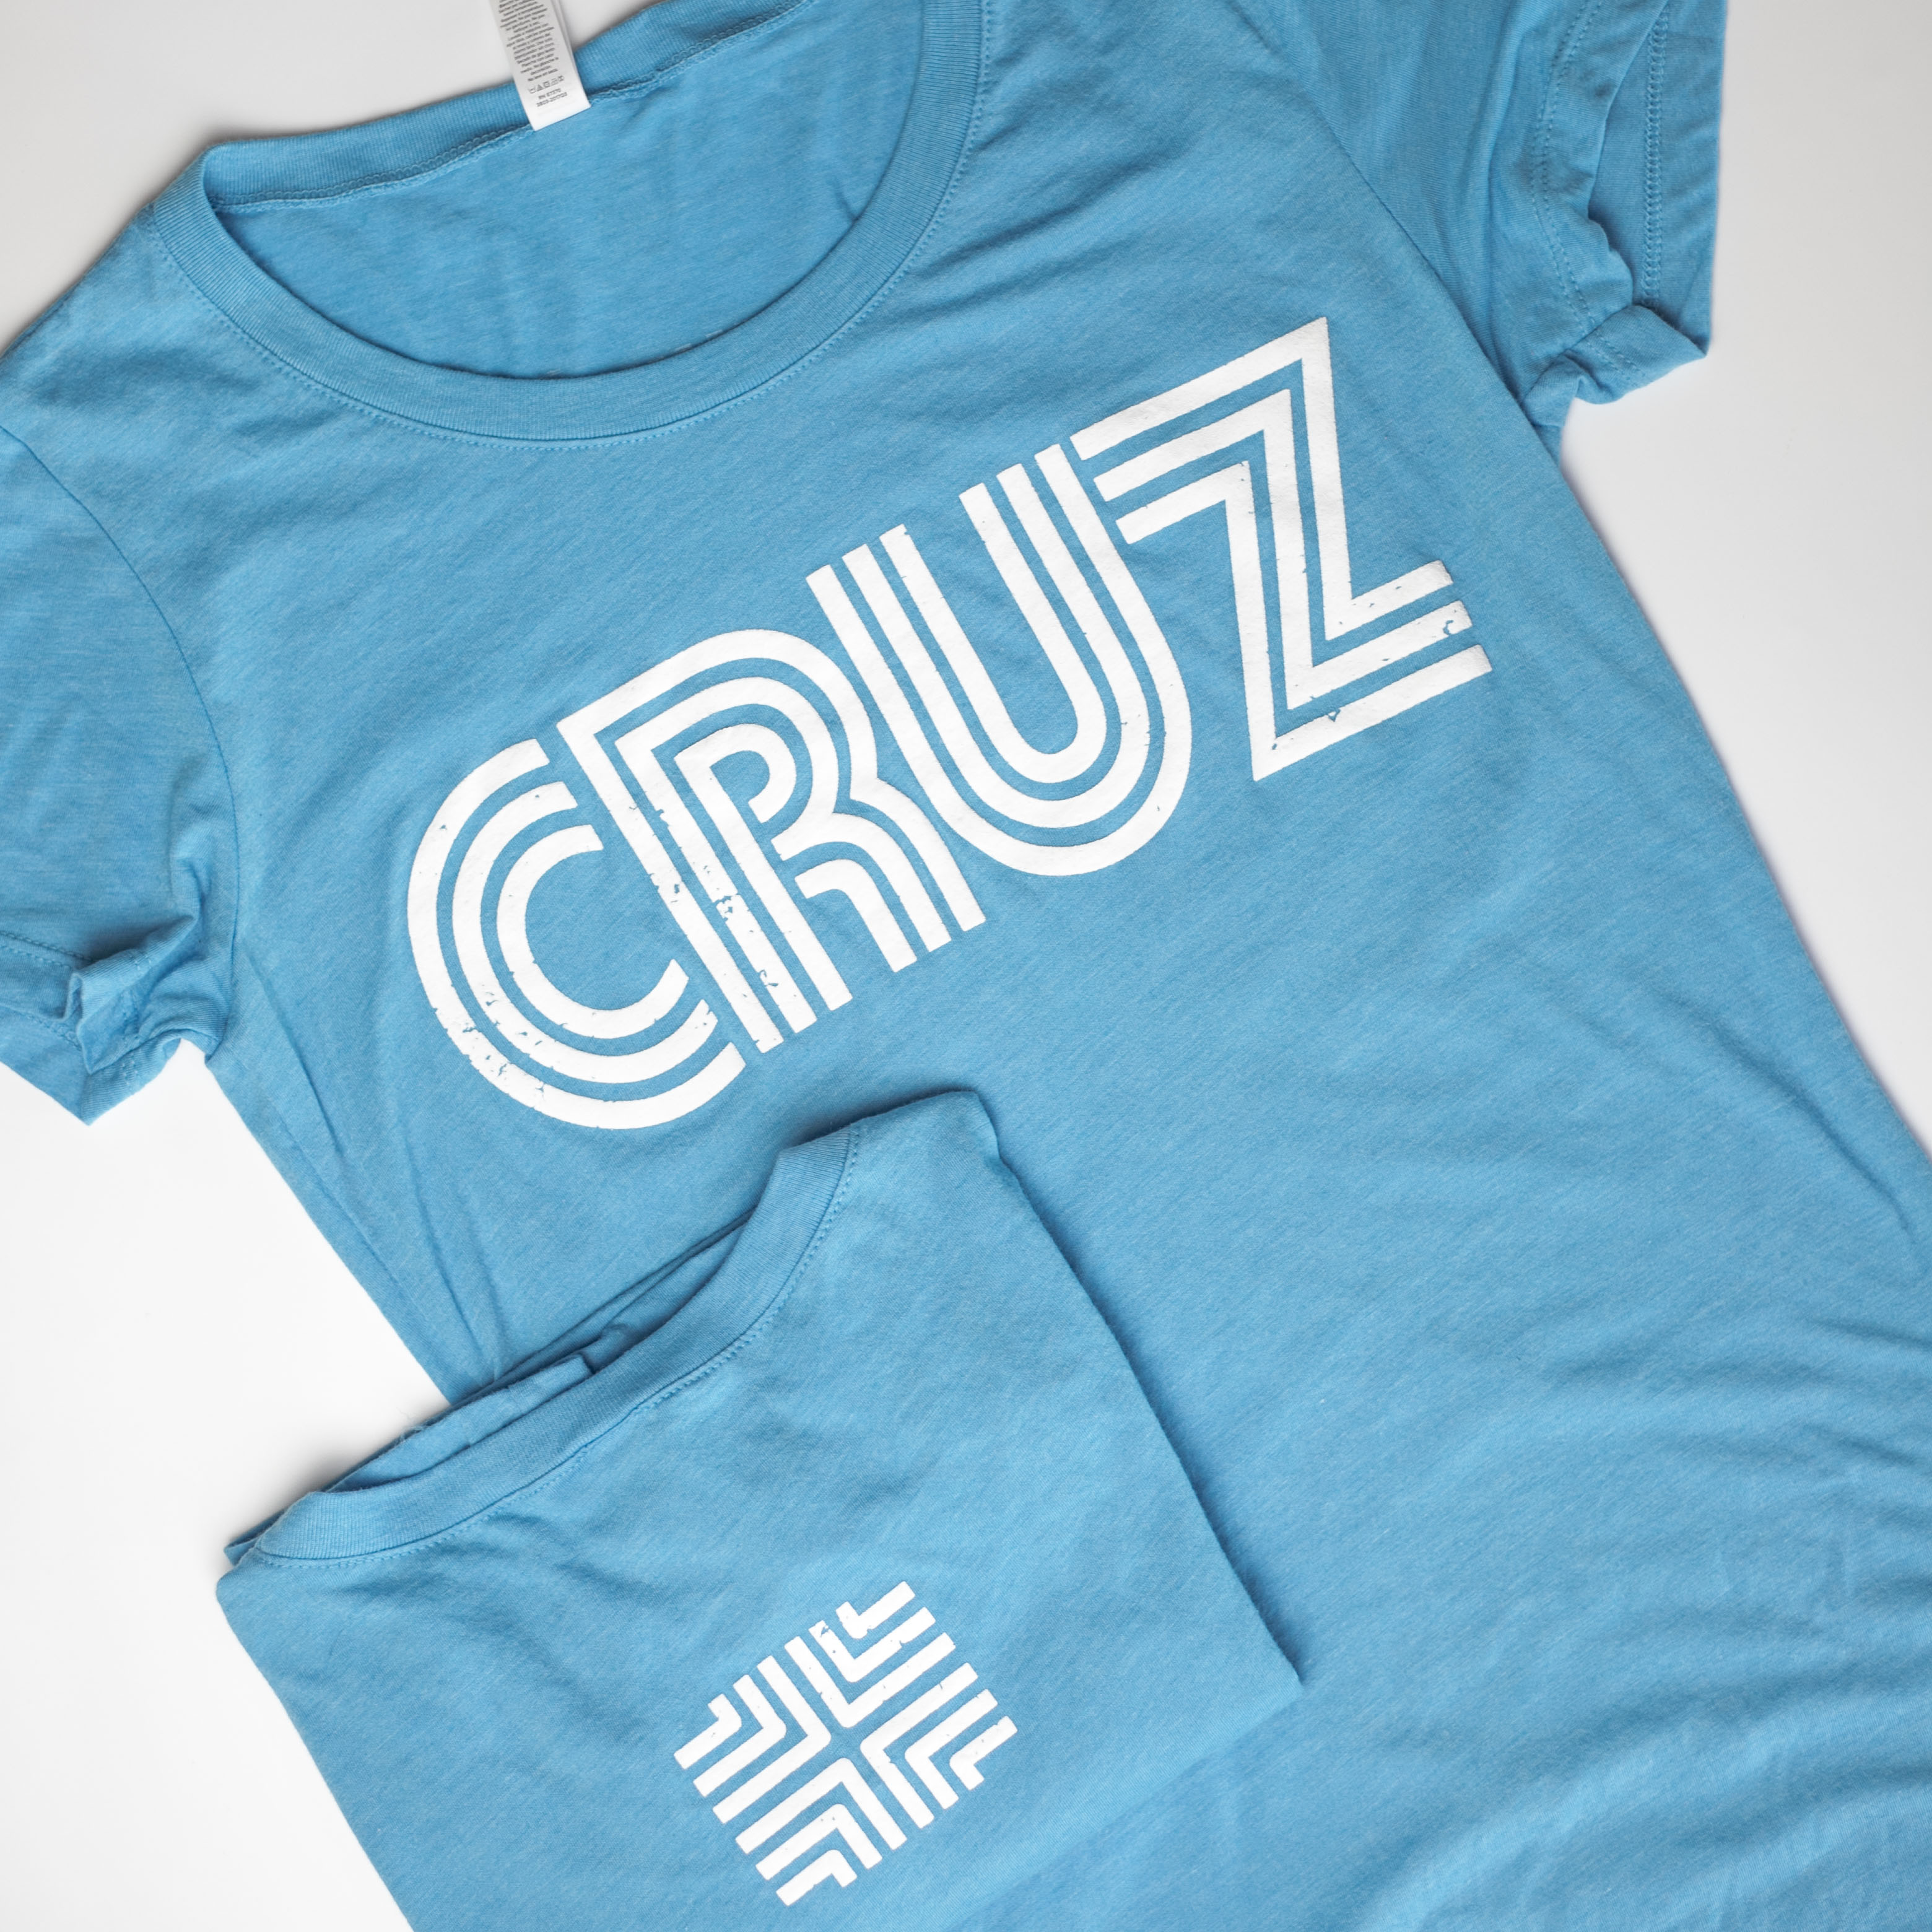 Cruz Women's T-Shirt